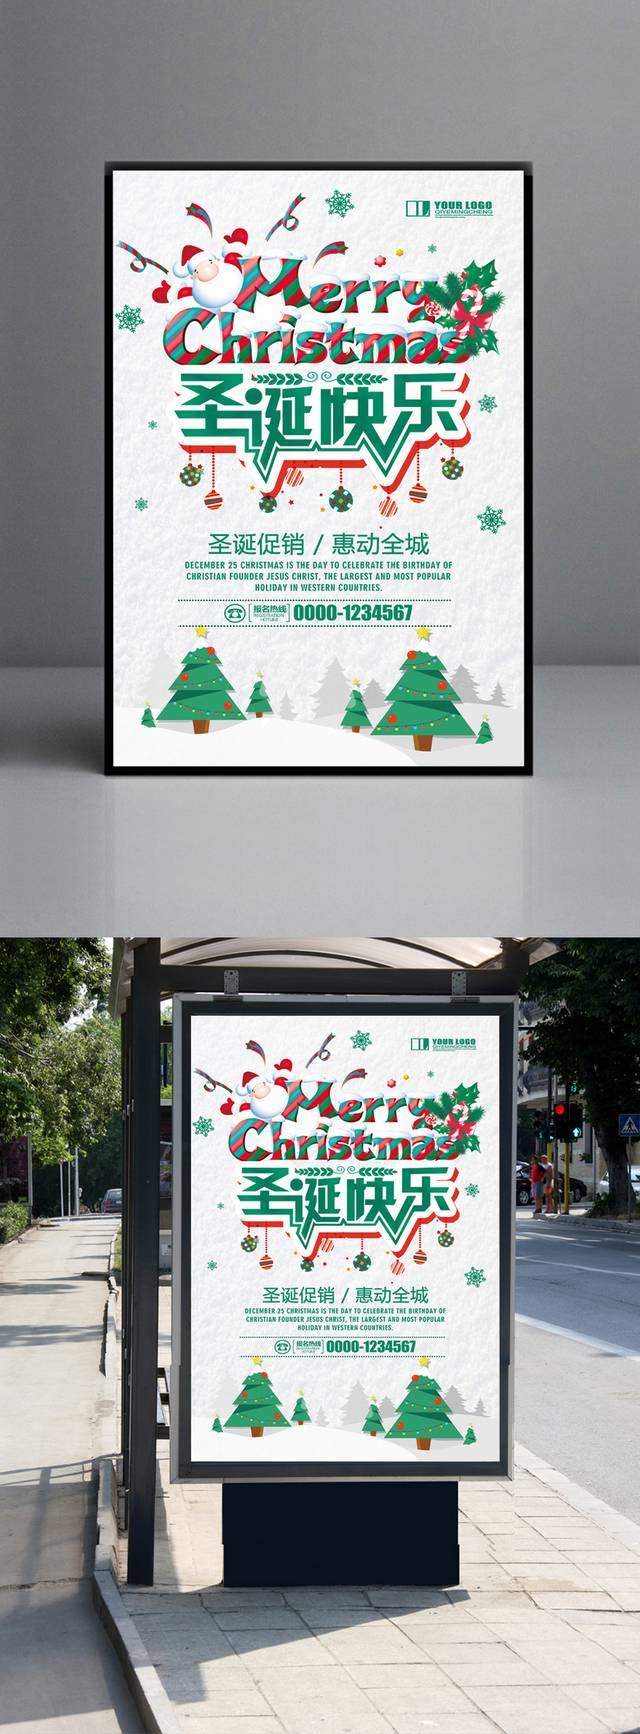 精美大气圣诞节海报设计模板下载